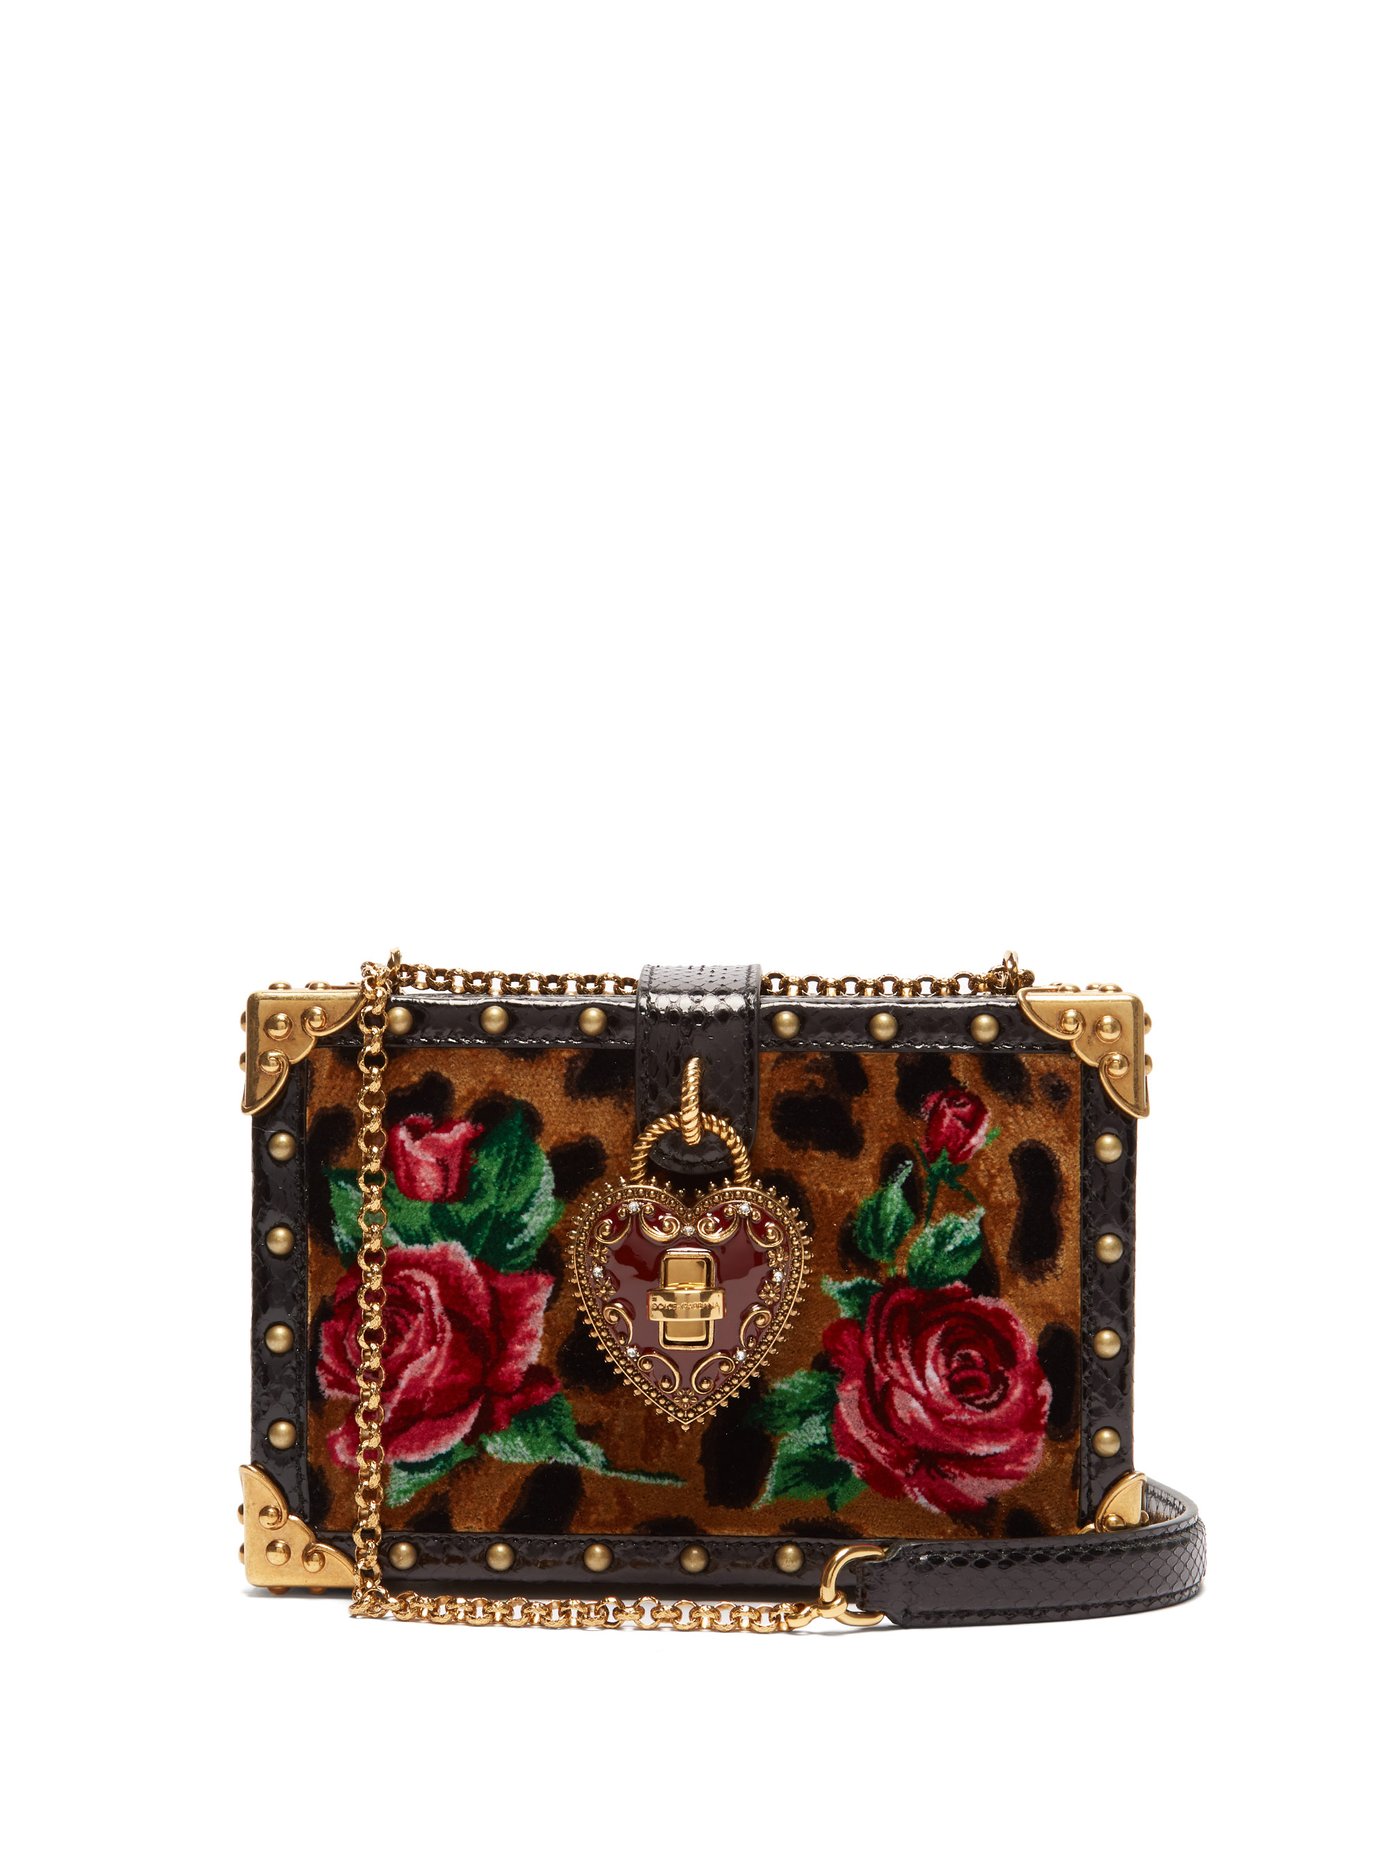 dolce and gabbana leopard purse